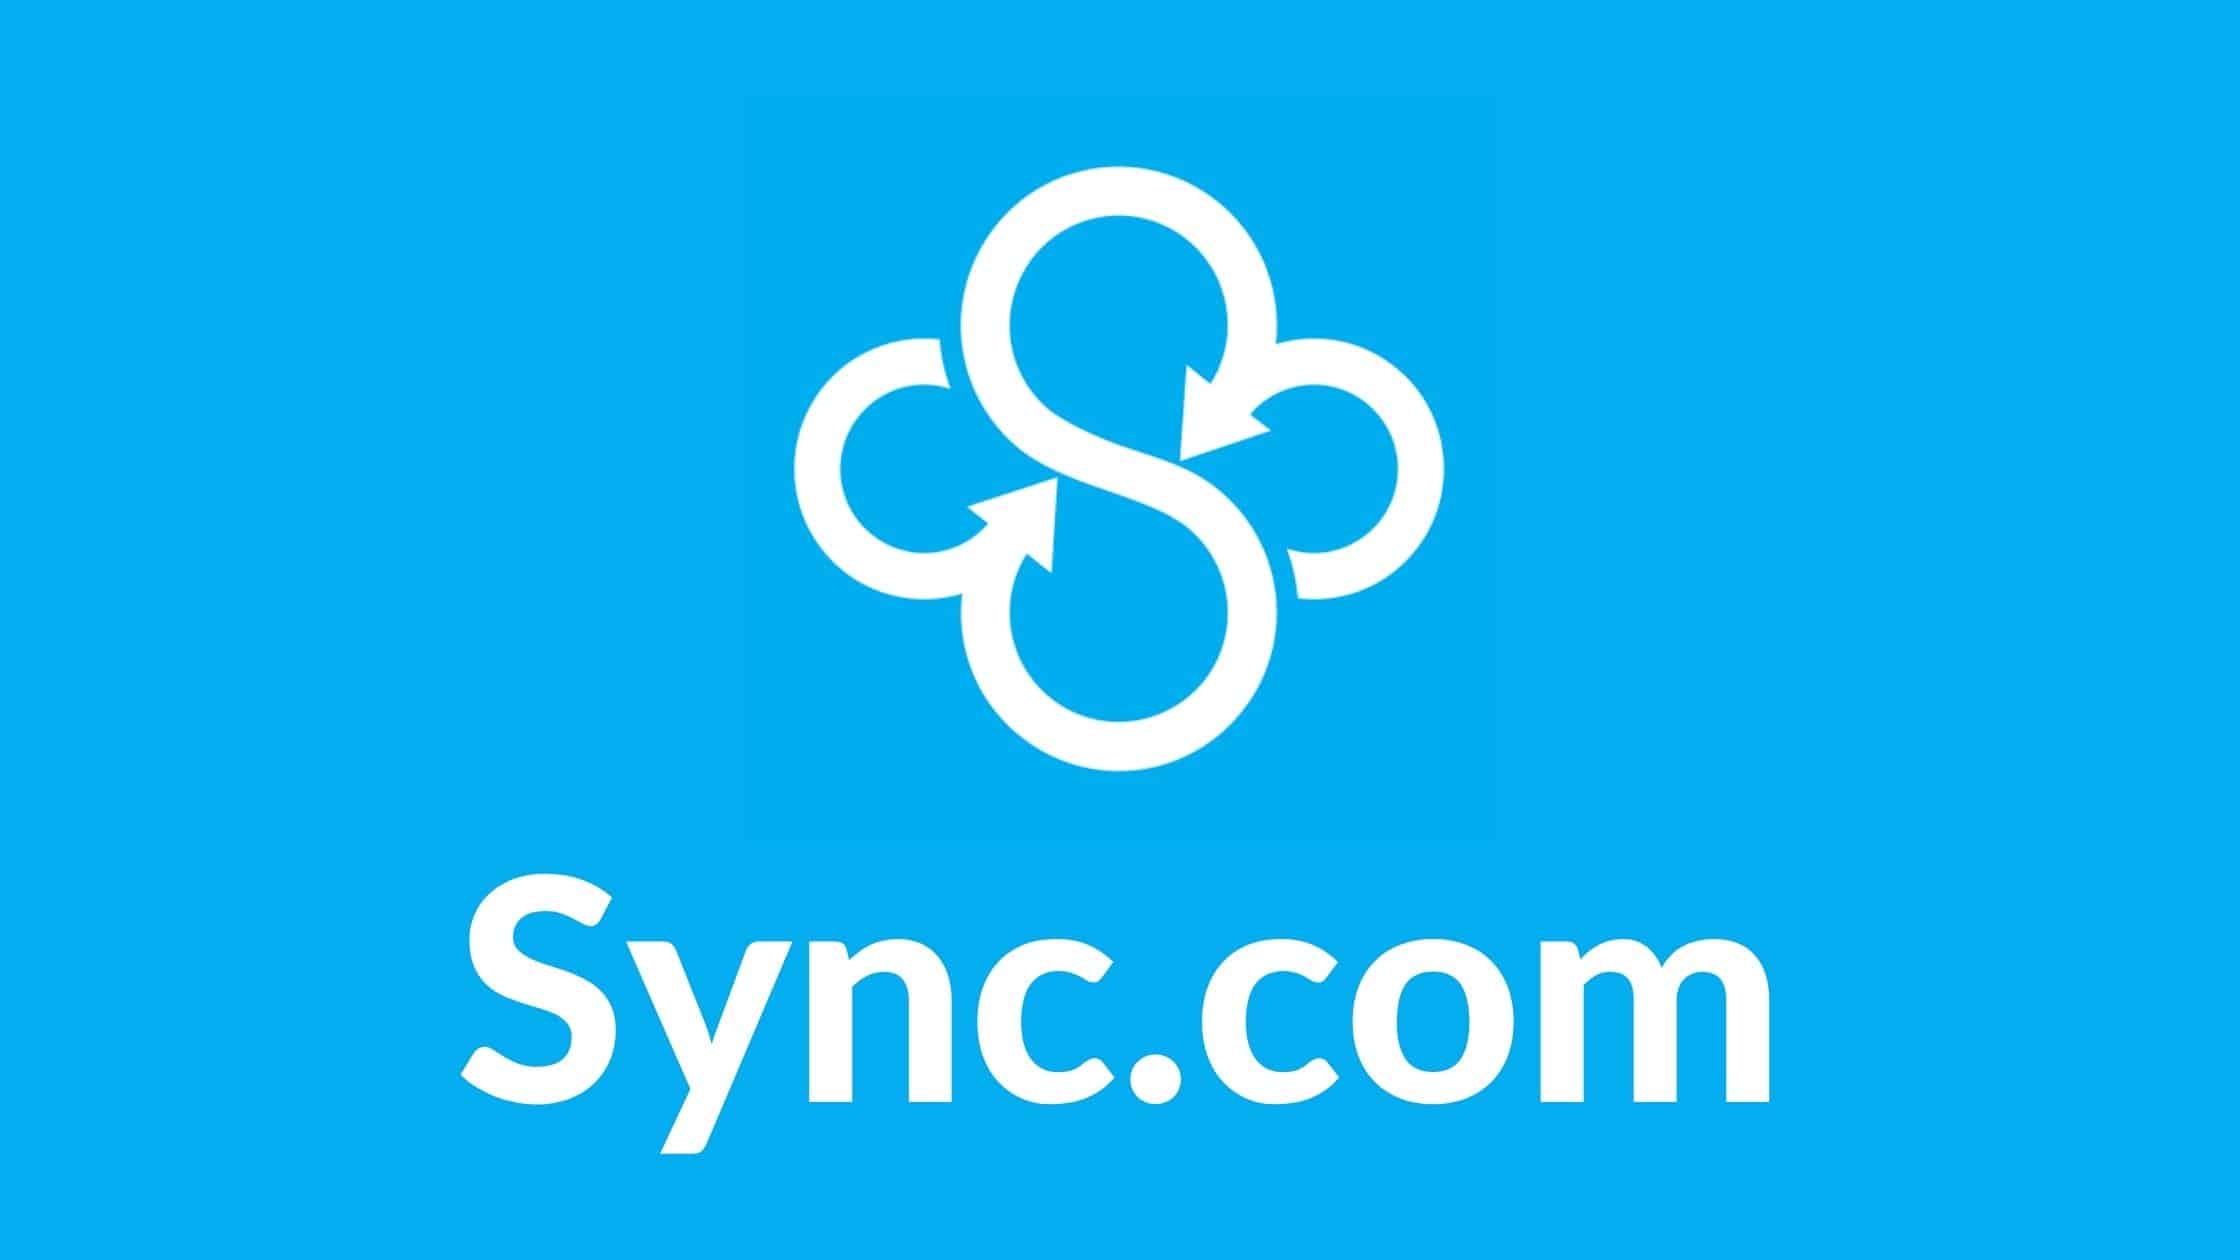 04 Sync.com